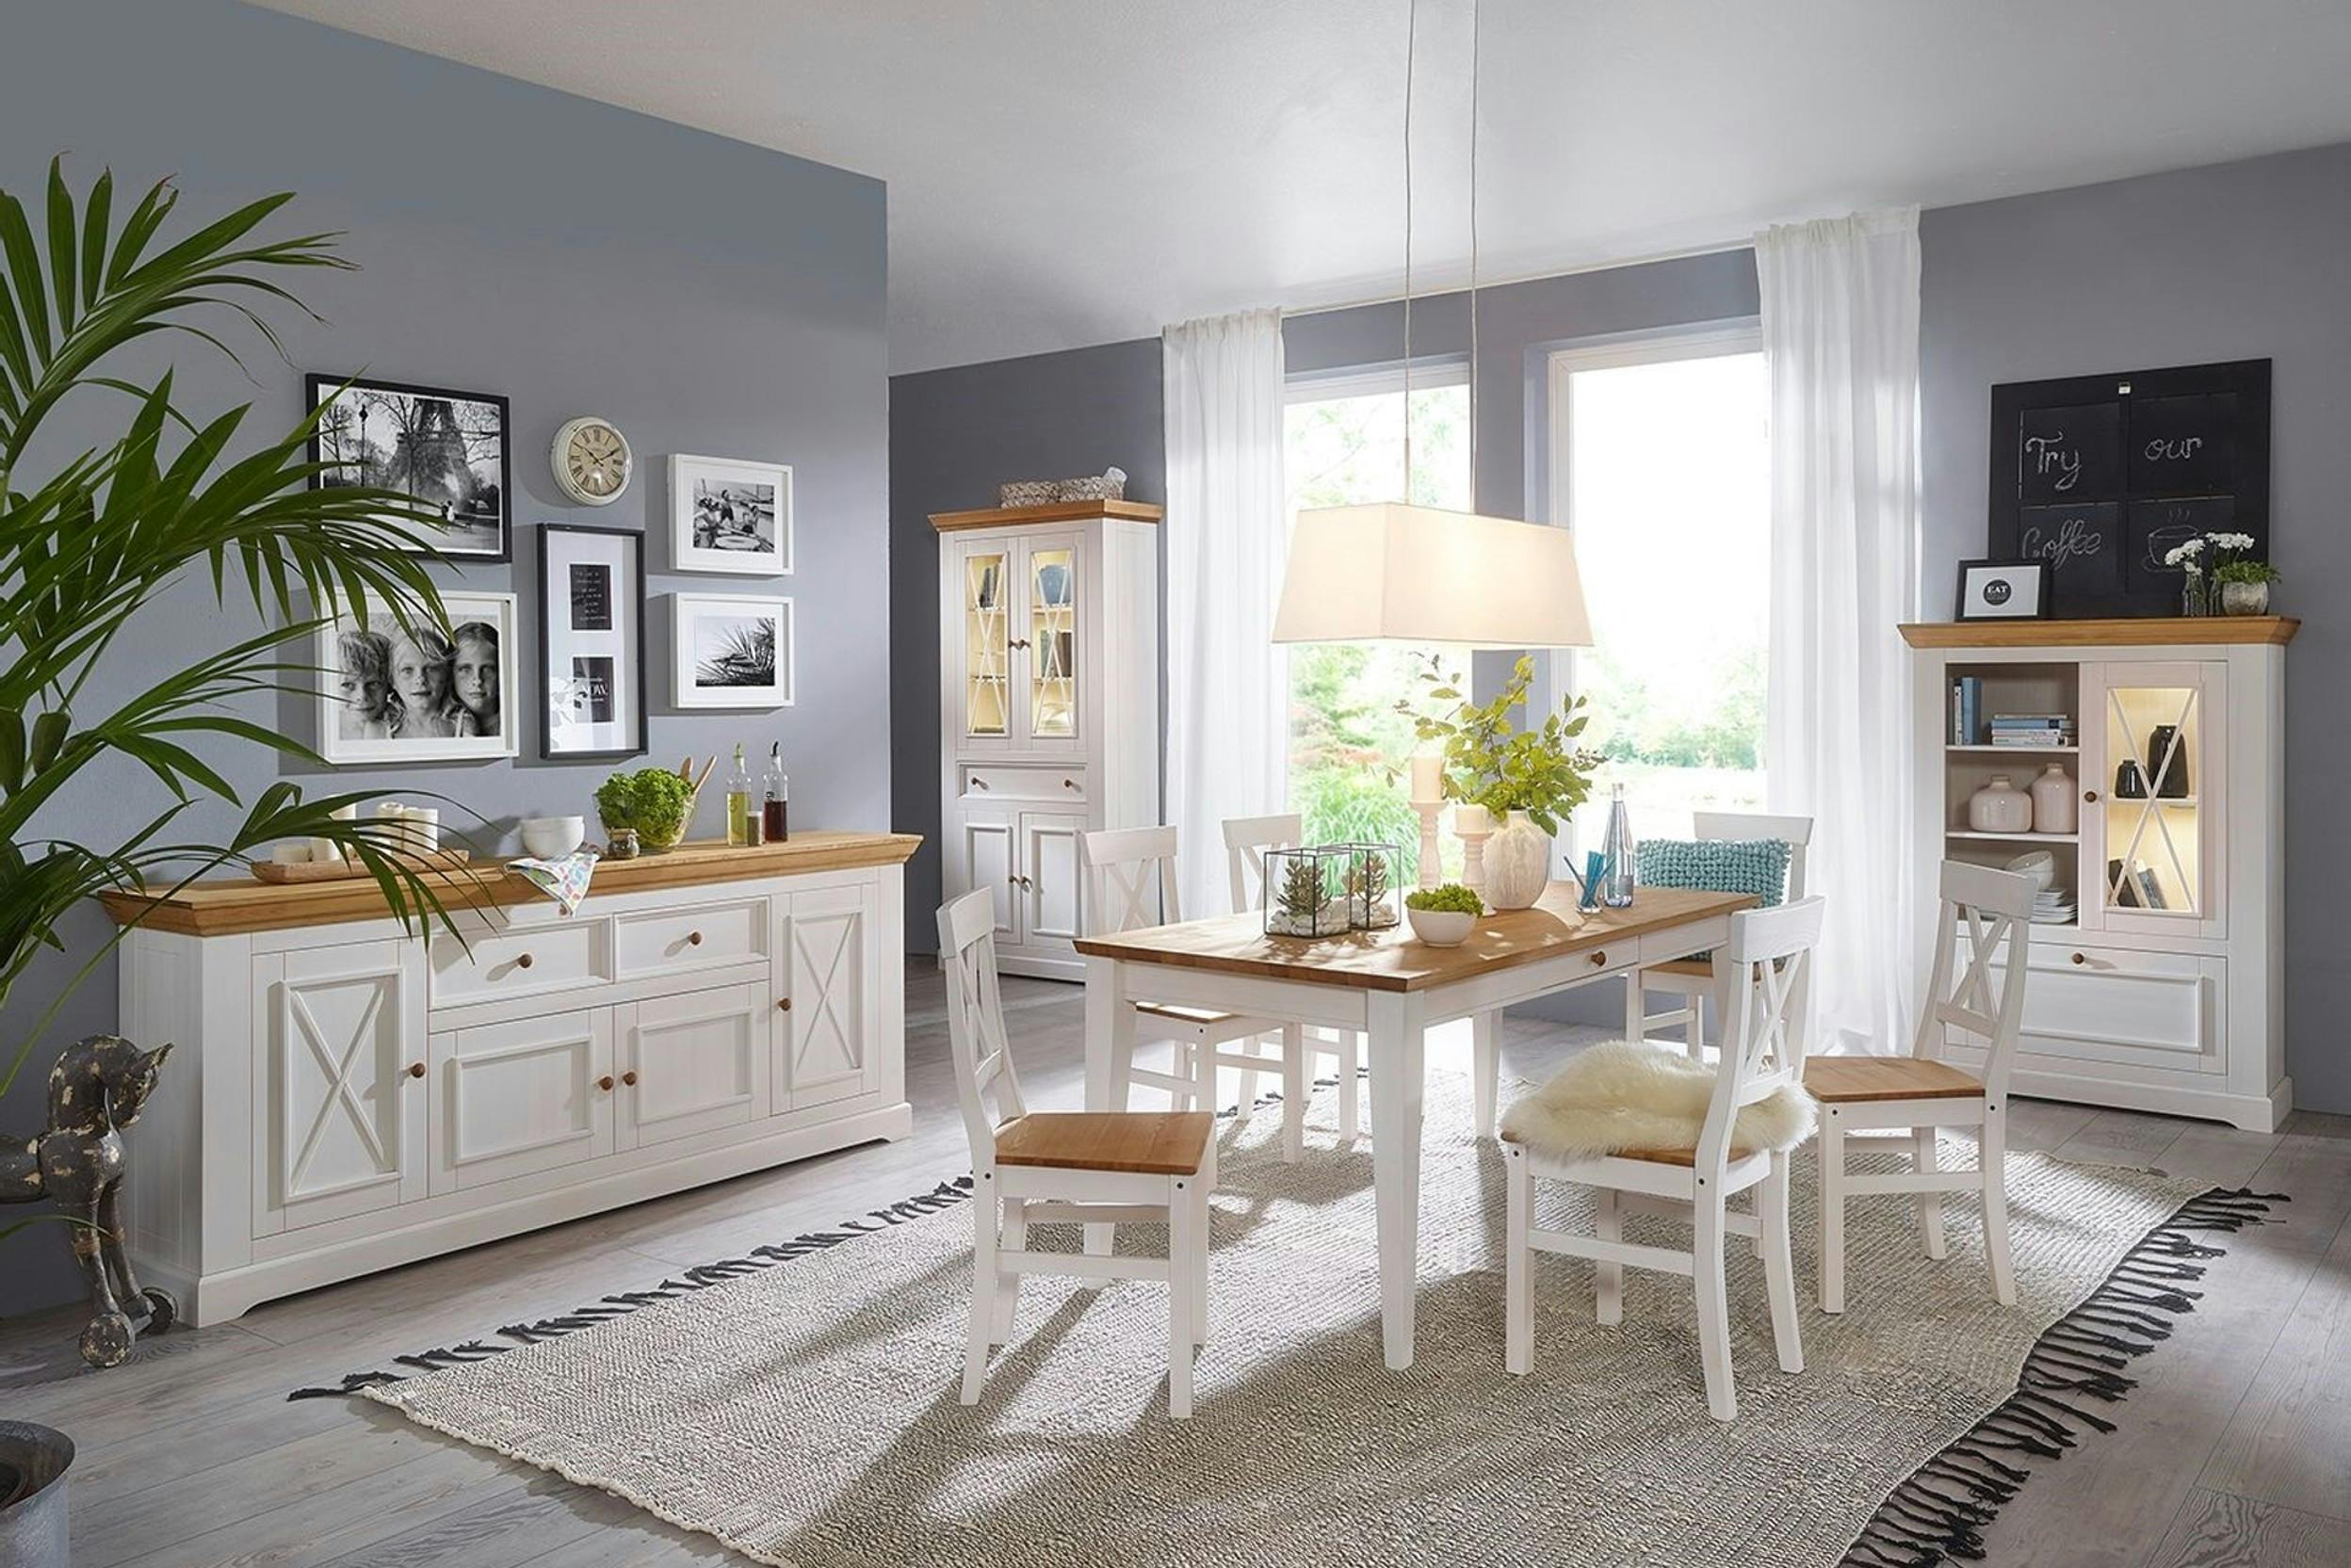 Sala da pranzo luminosa, arredata con mobili bianchi in stile classico rustico (marca: “Maison Belfort”, serie: “Ummanz”)